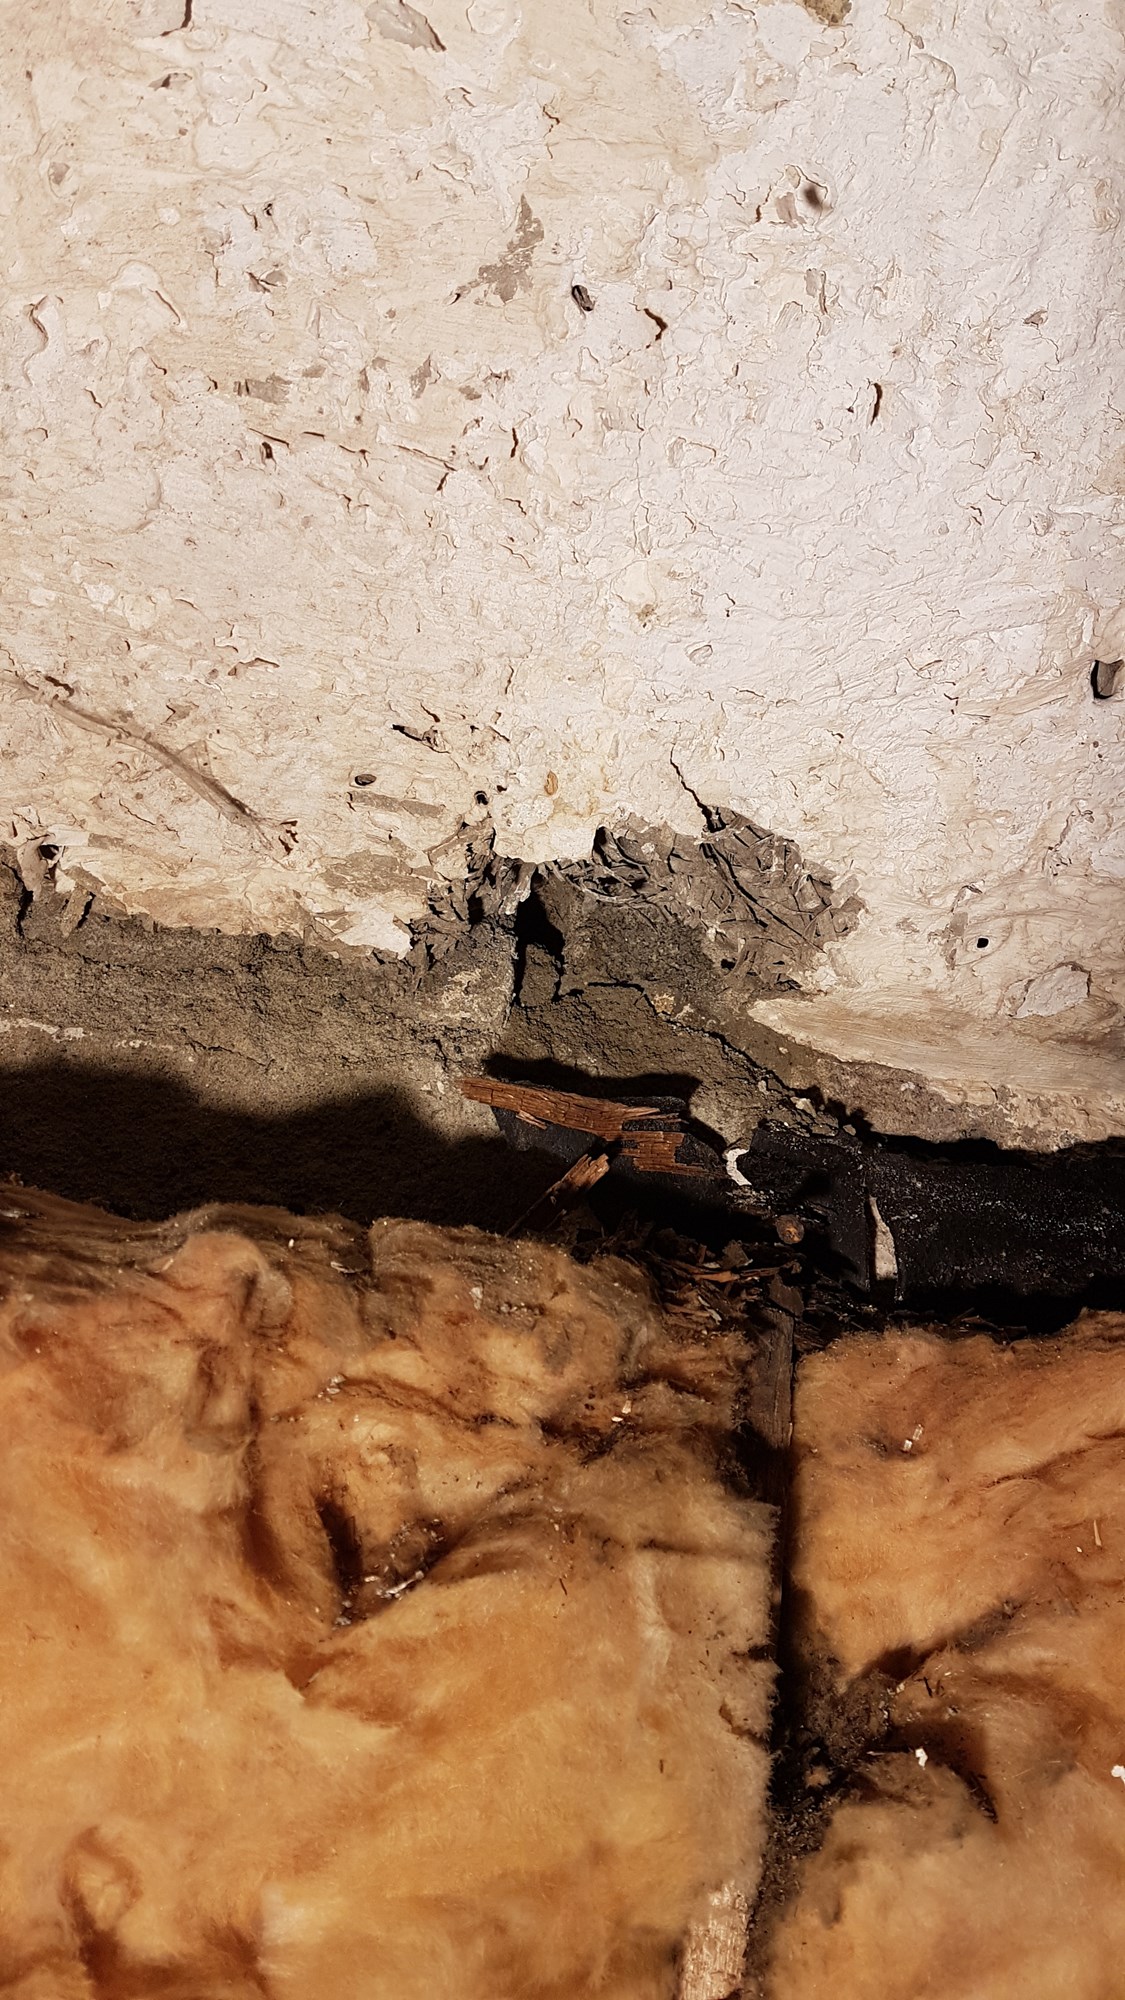 Råtten vegg i kjellerbod, mulig asbest? Tips ideer til hva materialet i muren bak er.  - 20180613_224547.jpg - hugohytte